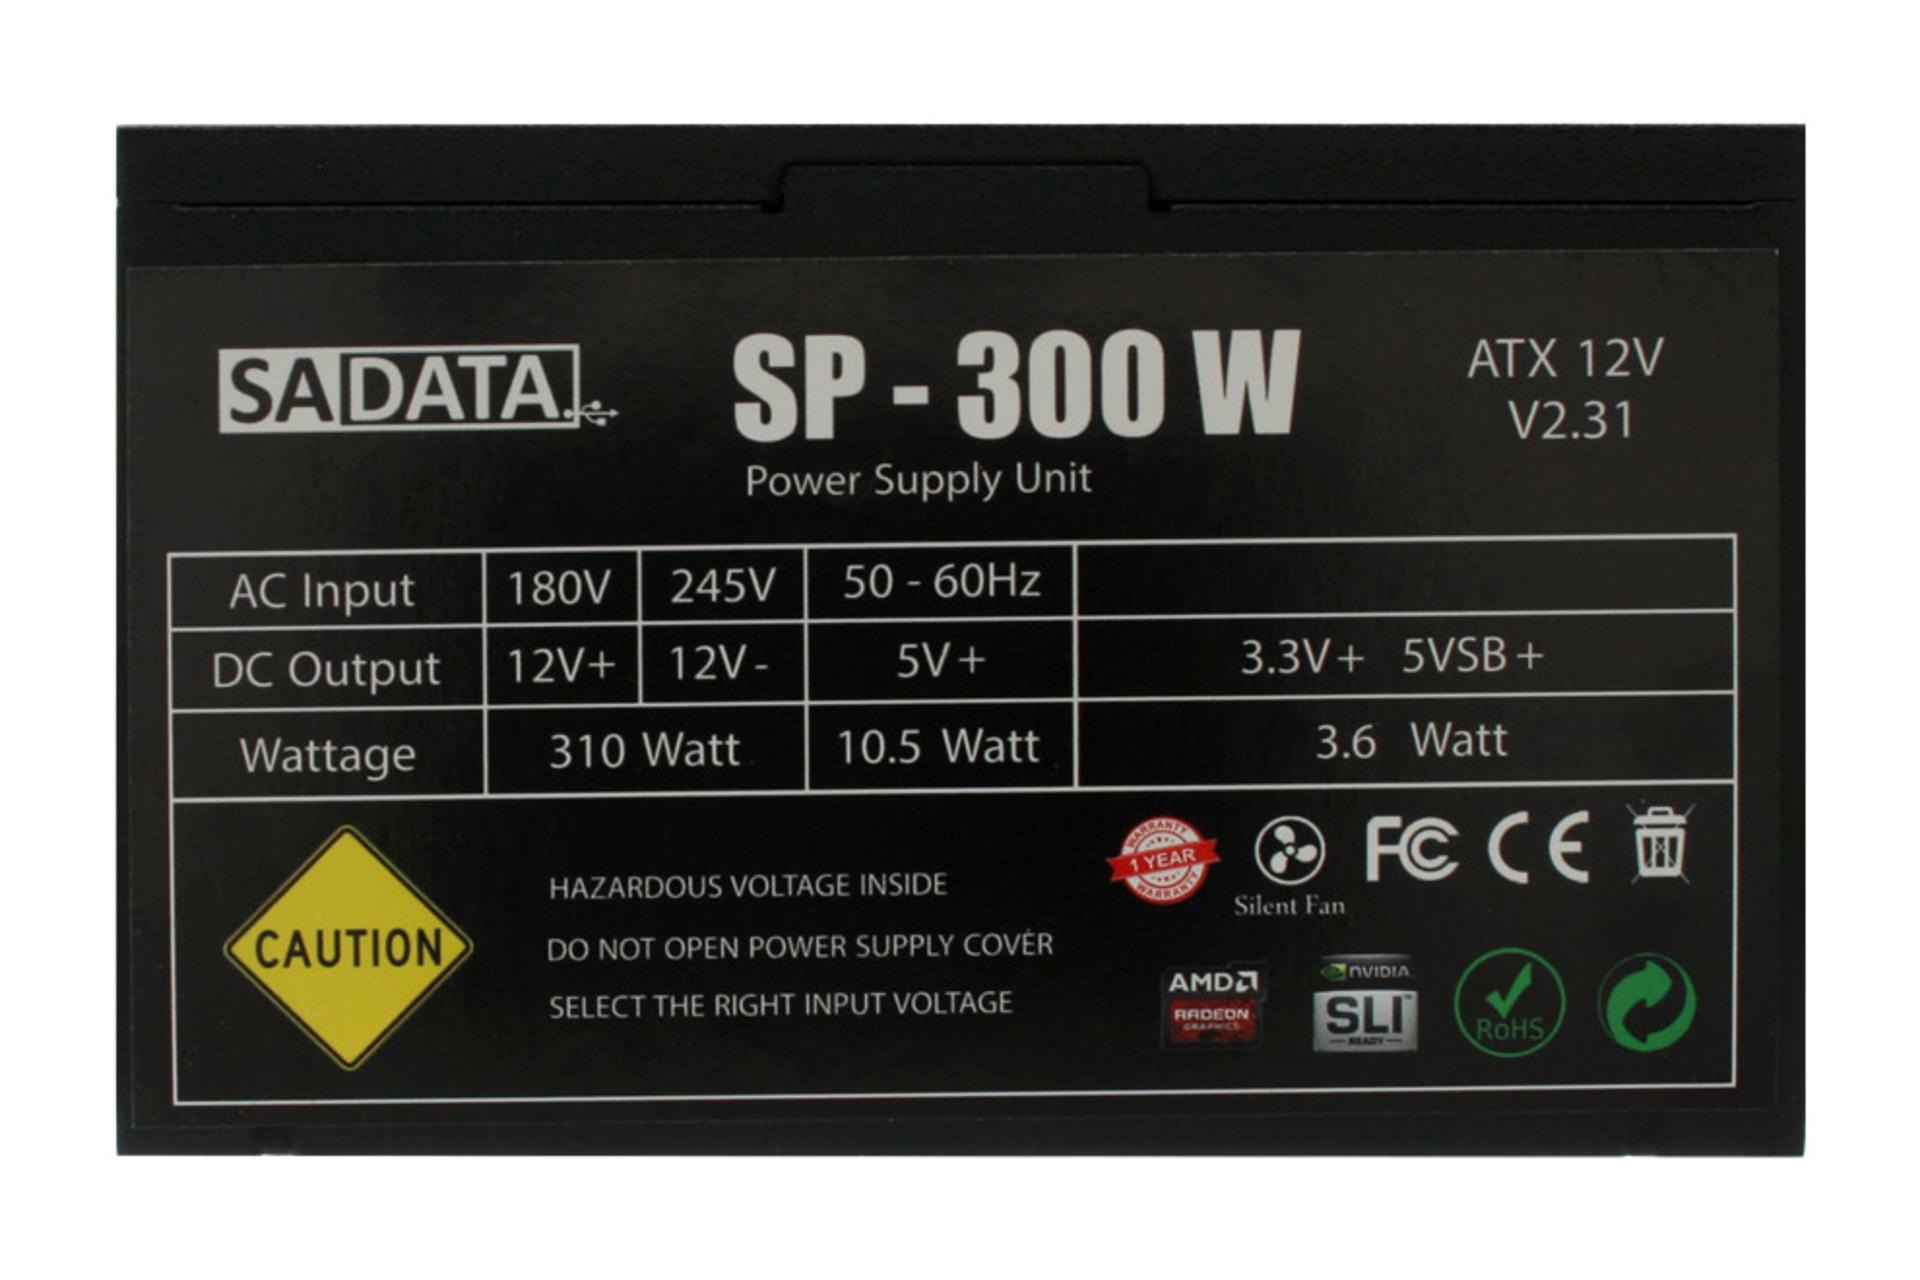 نمای کناری پاور کامپیوتر سادیتا SP-300 با توان 300 وات / SADATA SP-300 300W